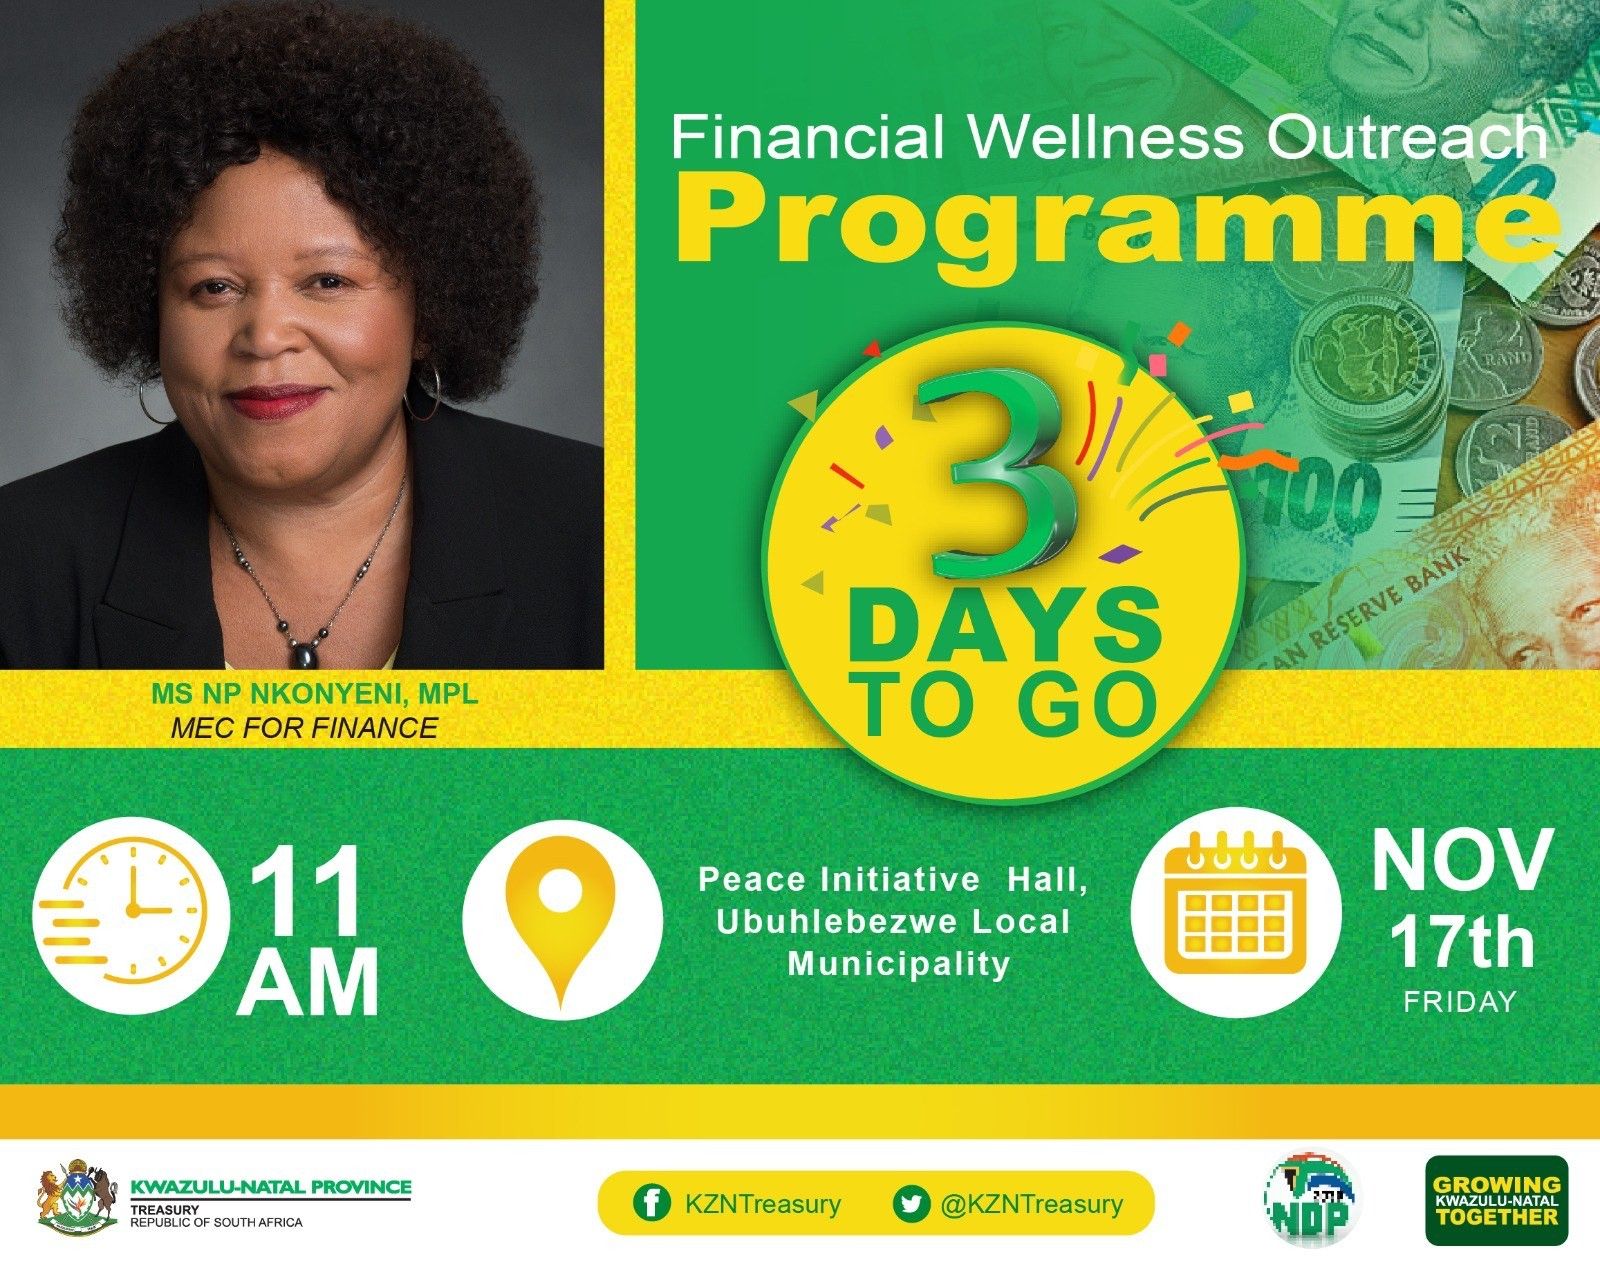 Financial wellness outreach programme